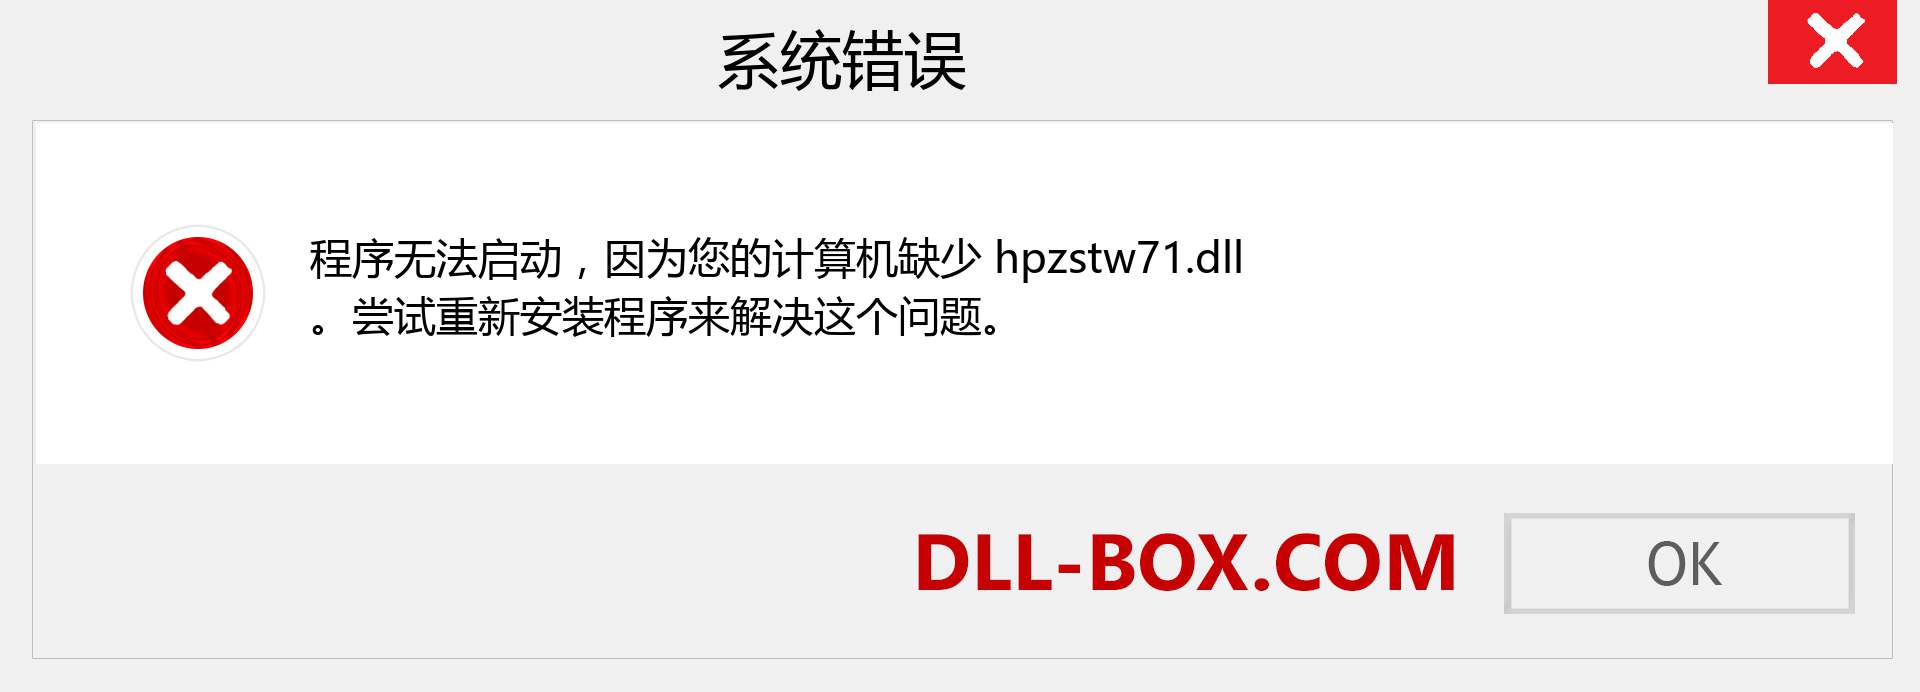 hpzstw71.dll 文件丢失？。 适用于 Windows 7、8、10 的下载 - 修复 Windows、照片、图像上的 hpzstw71 dll 丢失错误